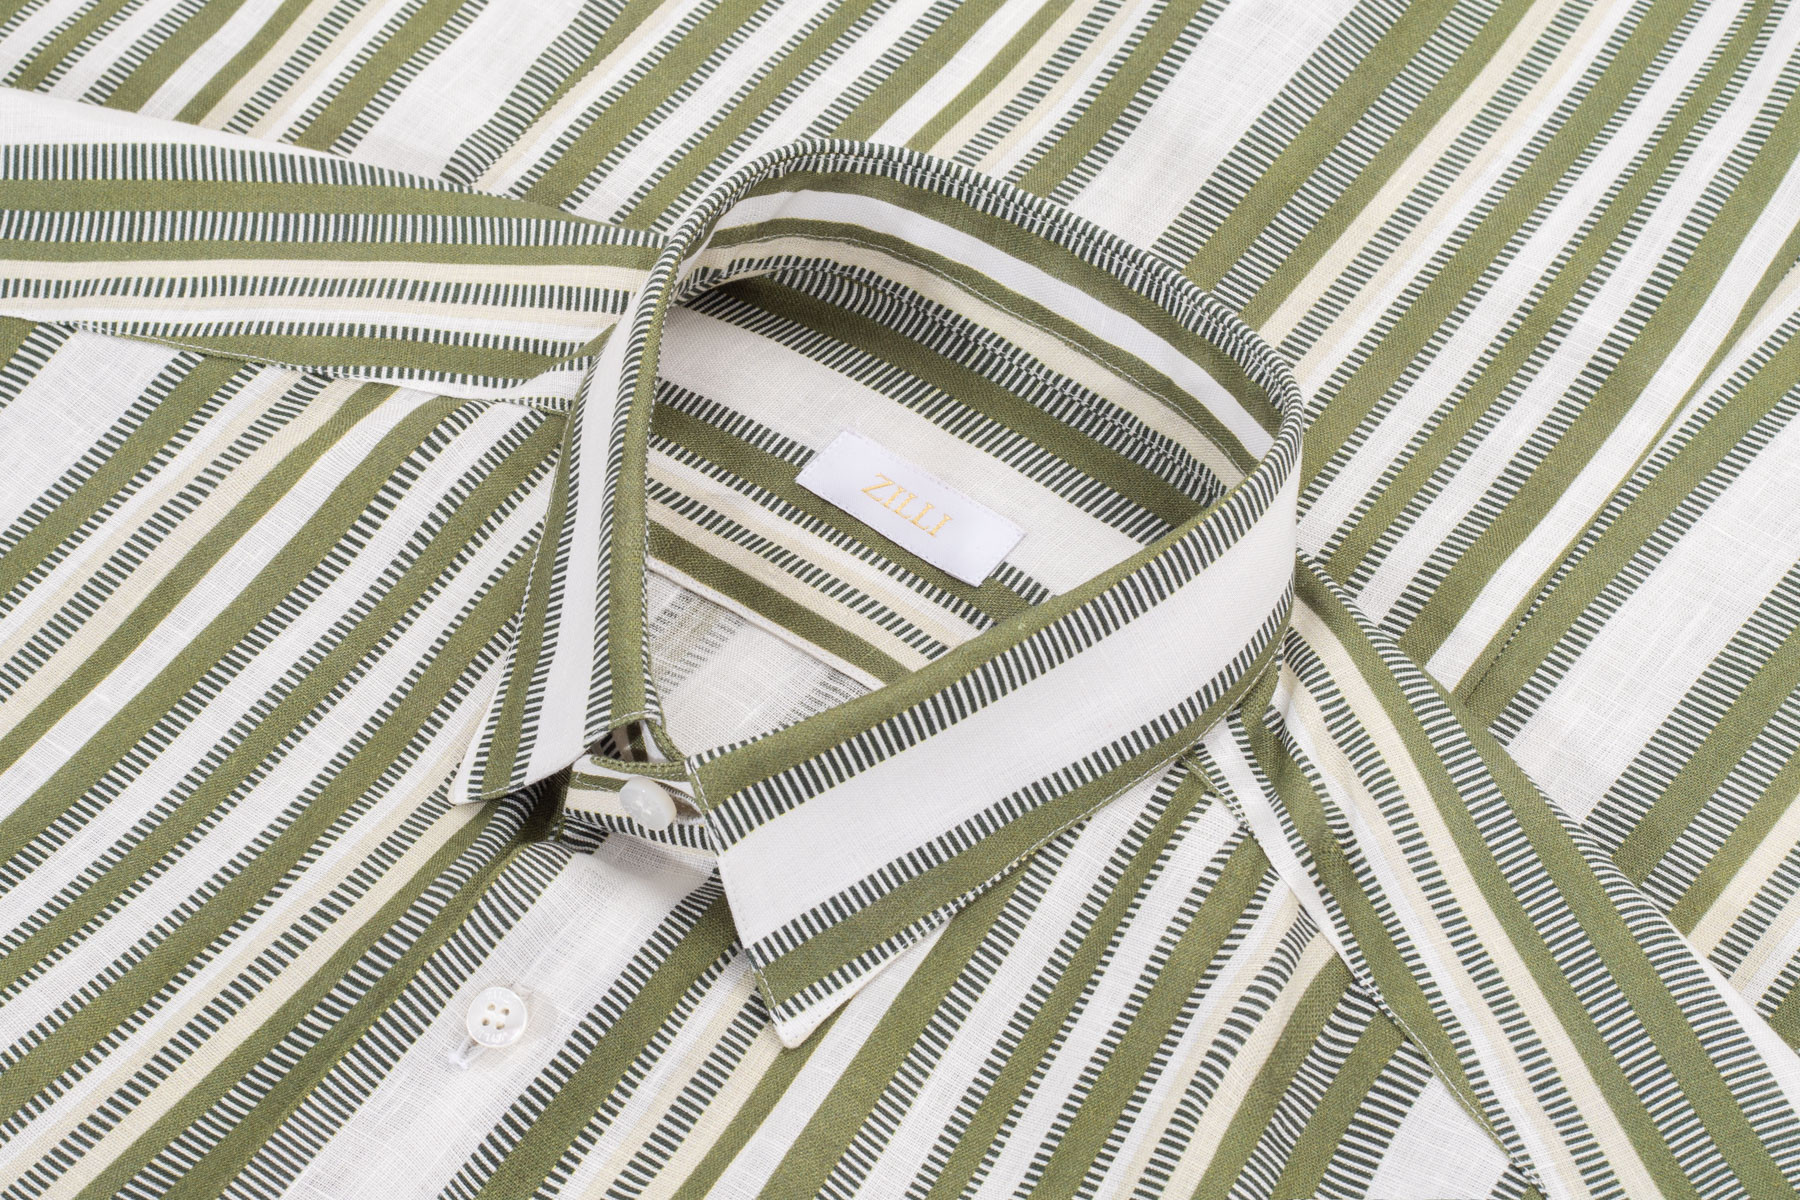 Khaki-green, white and beige striped shirt